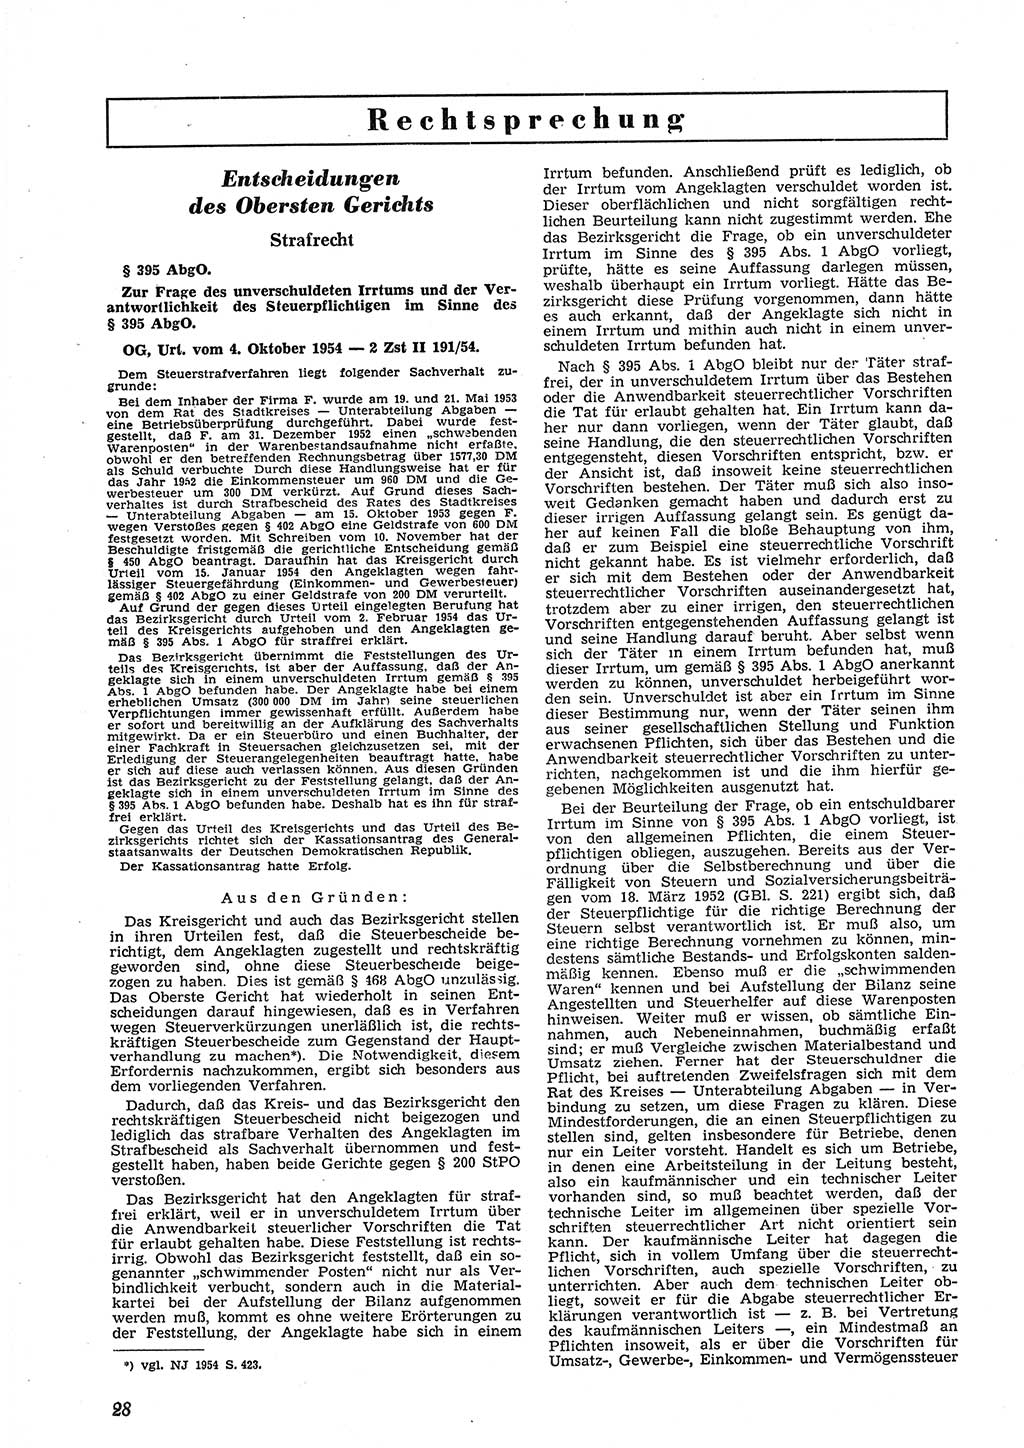 Neue Justiz (NJ), Zeitschrift für Recht und Rechtswissenschaft [Deutsche Demokratische Republik (DDR)], 9. Jahrgang 1955, Seite 28 (NJ DDR 1955, S. 28)